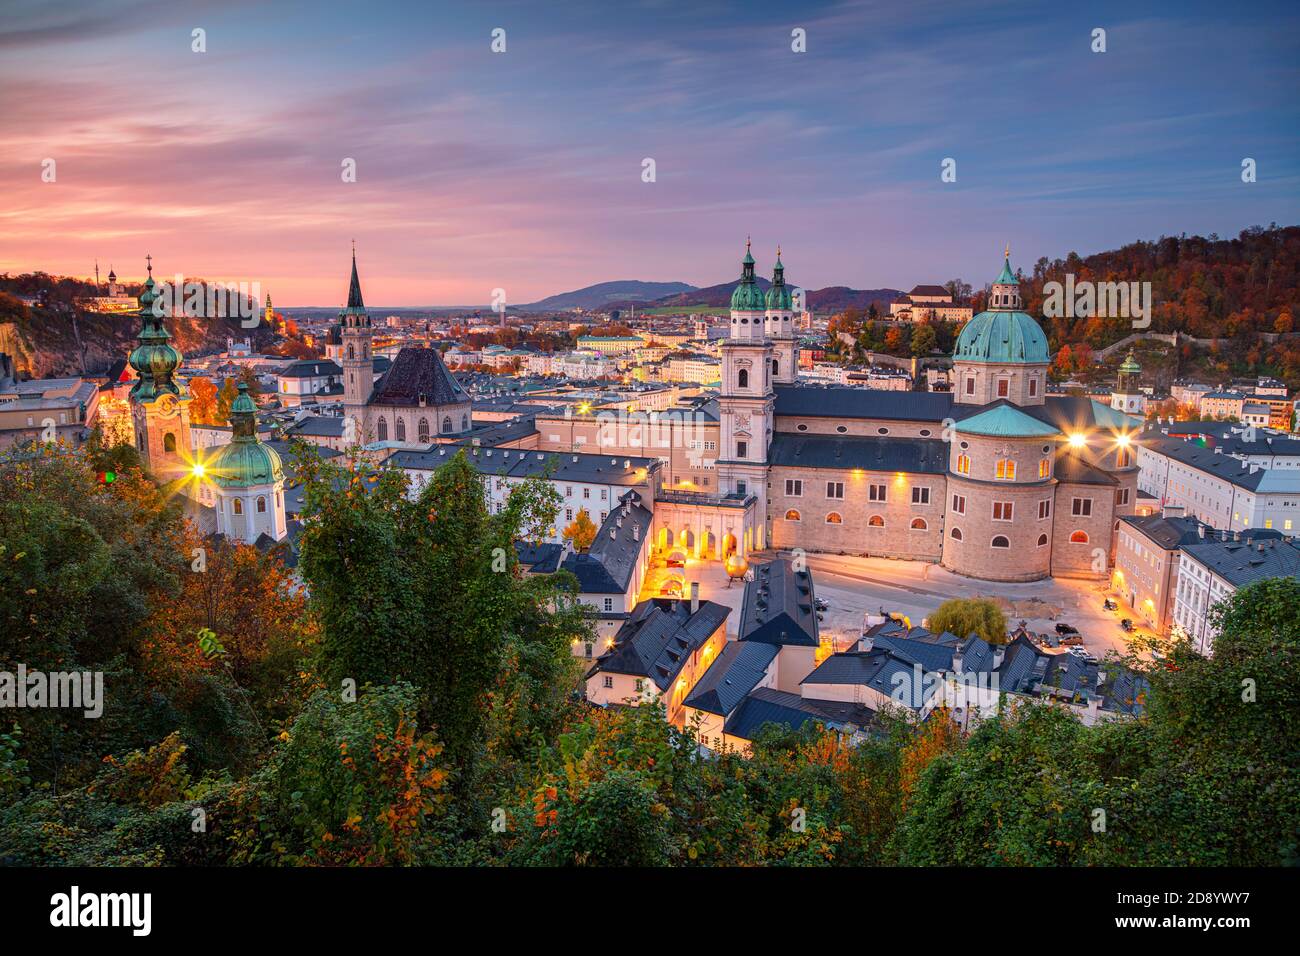 Salzburg, Österreich. Stadtbild Bild der Salzburg, Österreich mit Salzburg Dom im Herbst Sonnenuntergang. Stockfoto